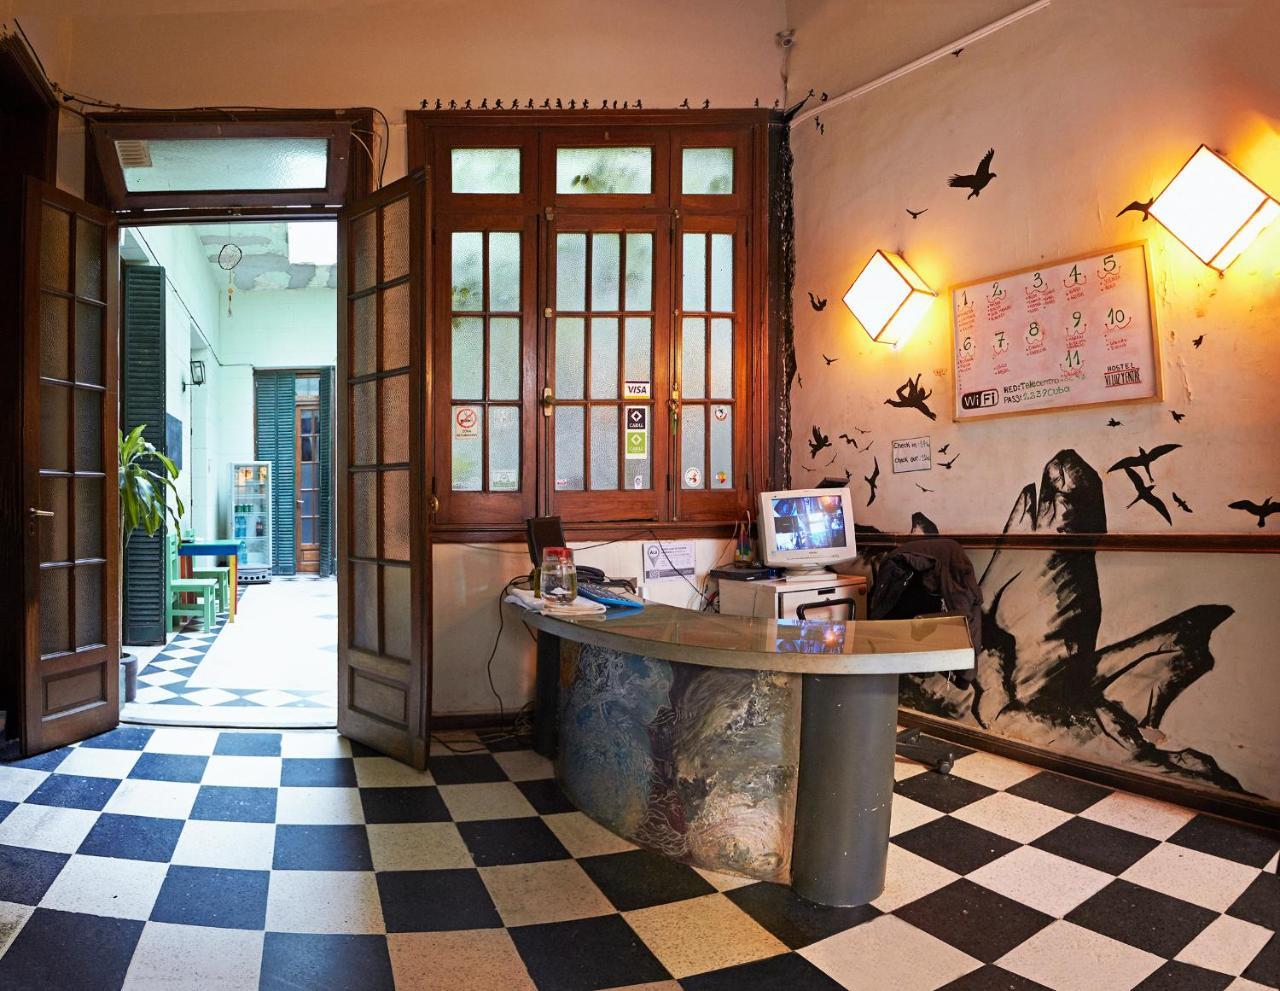 VI Luz Y Entre Hostel Buenos Aires Exterior photo